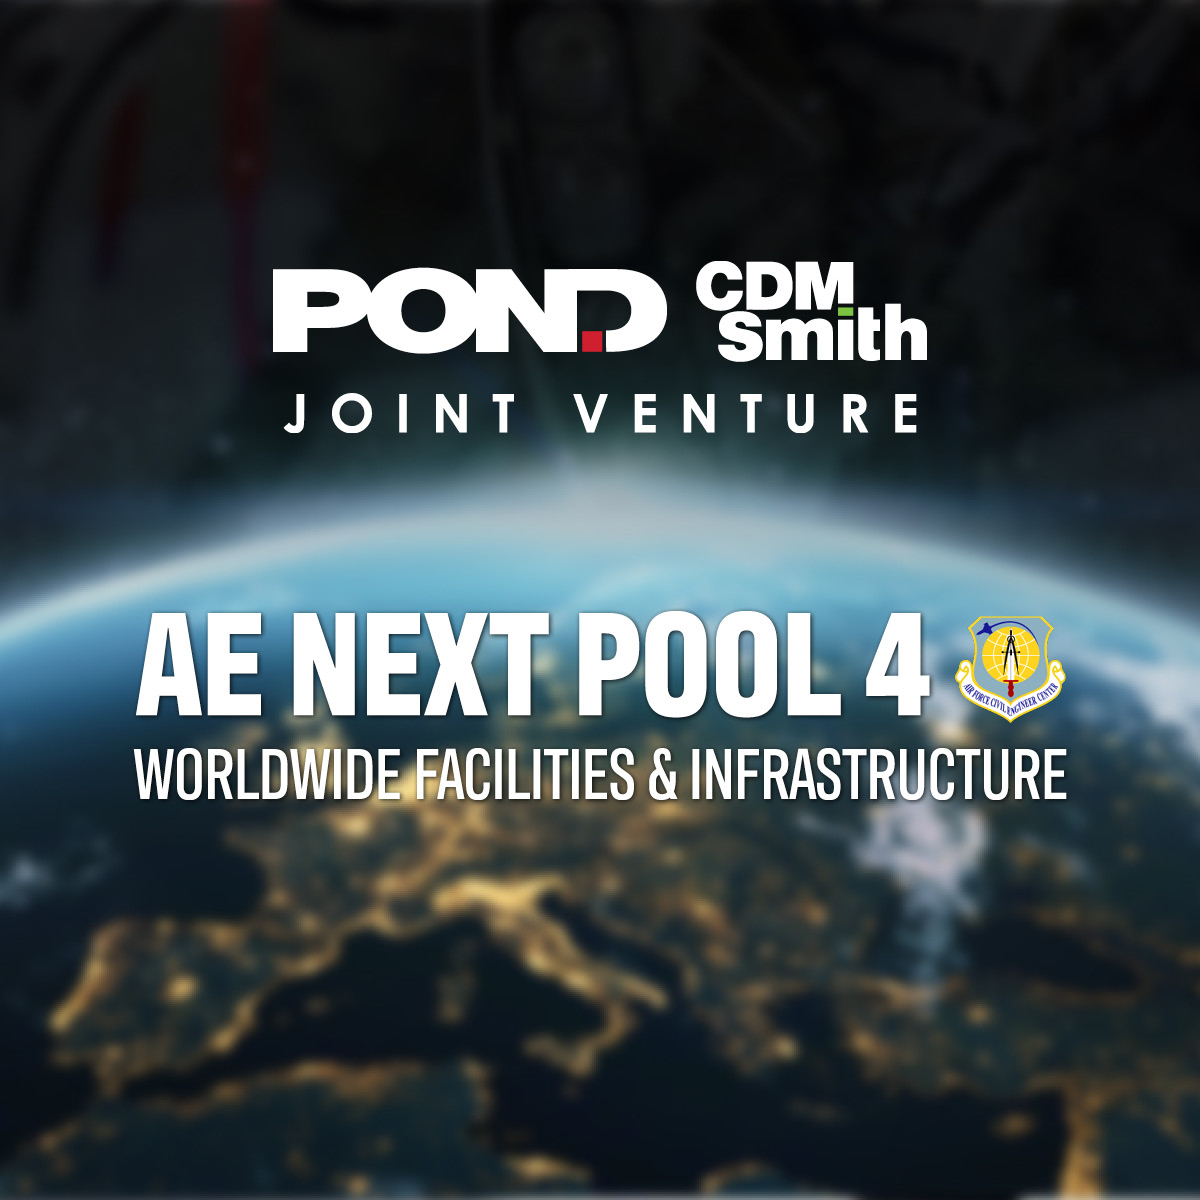 Pond-CDM Smith JV Awarded AFCEC AE Next Pool 4